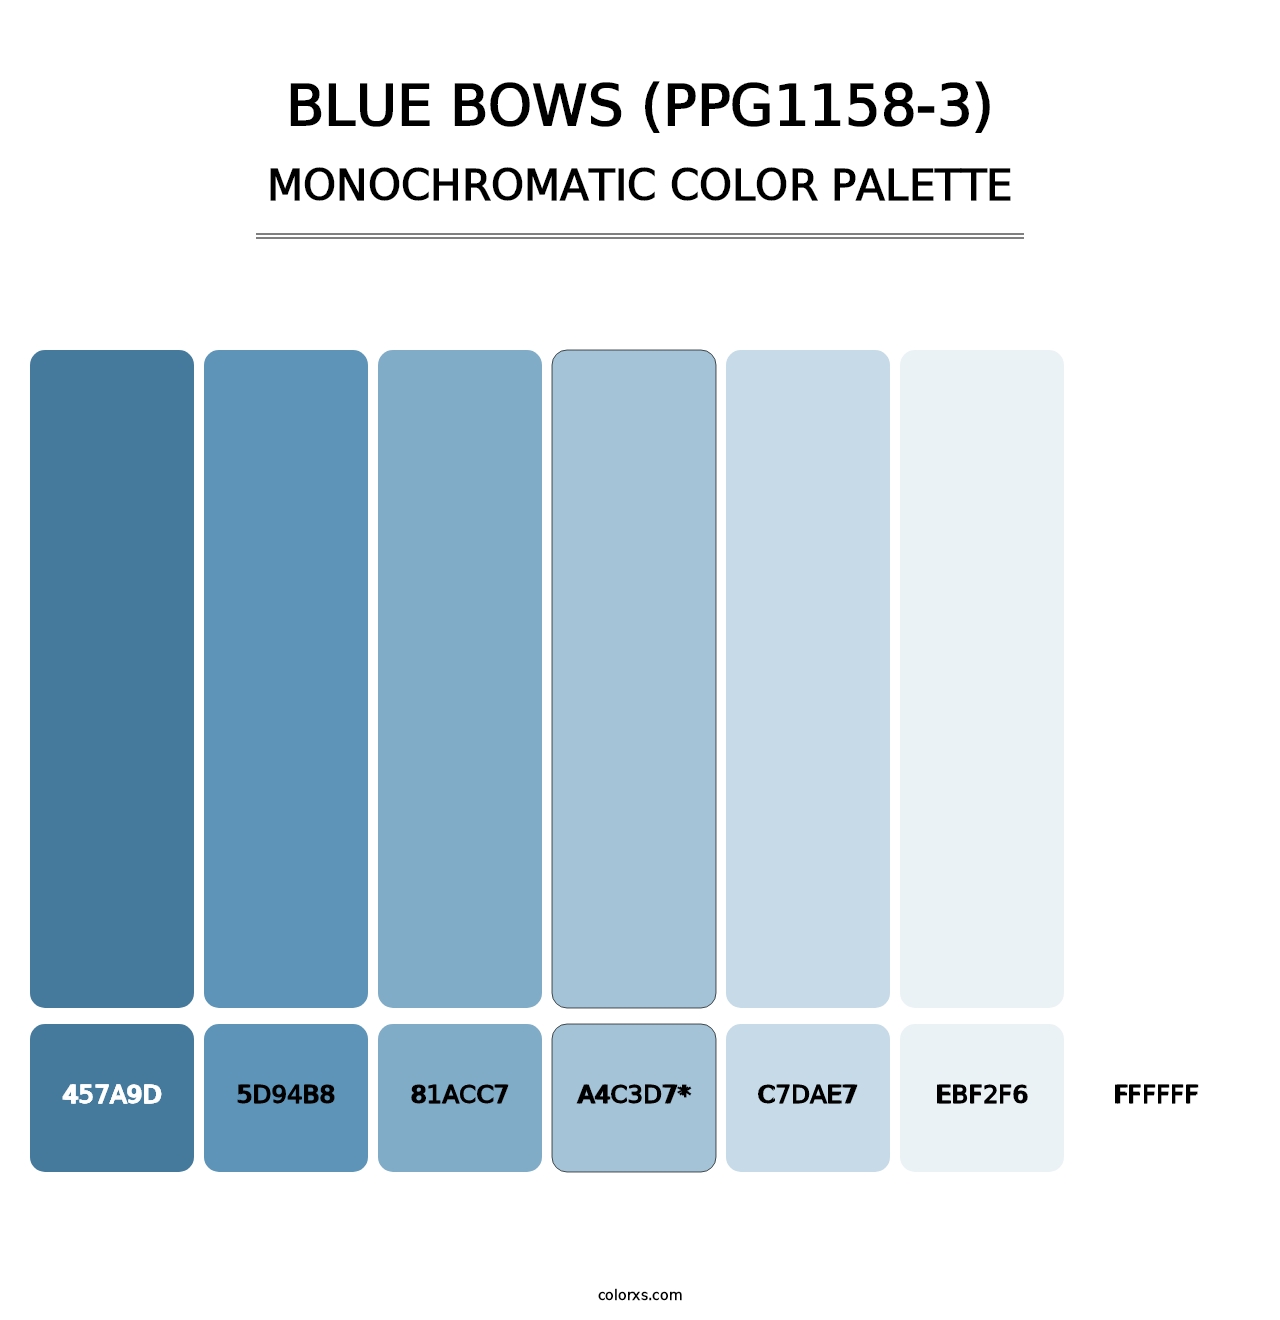 Blue Bows (PPG1158-3) - Monochromatic Color Palette